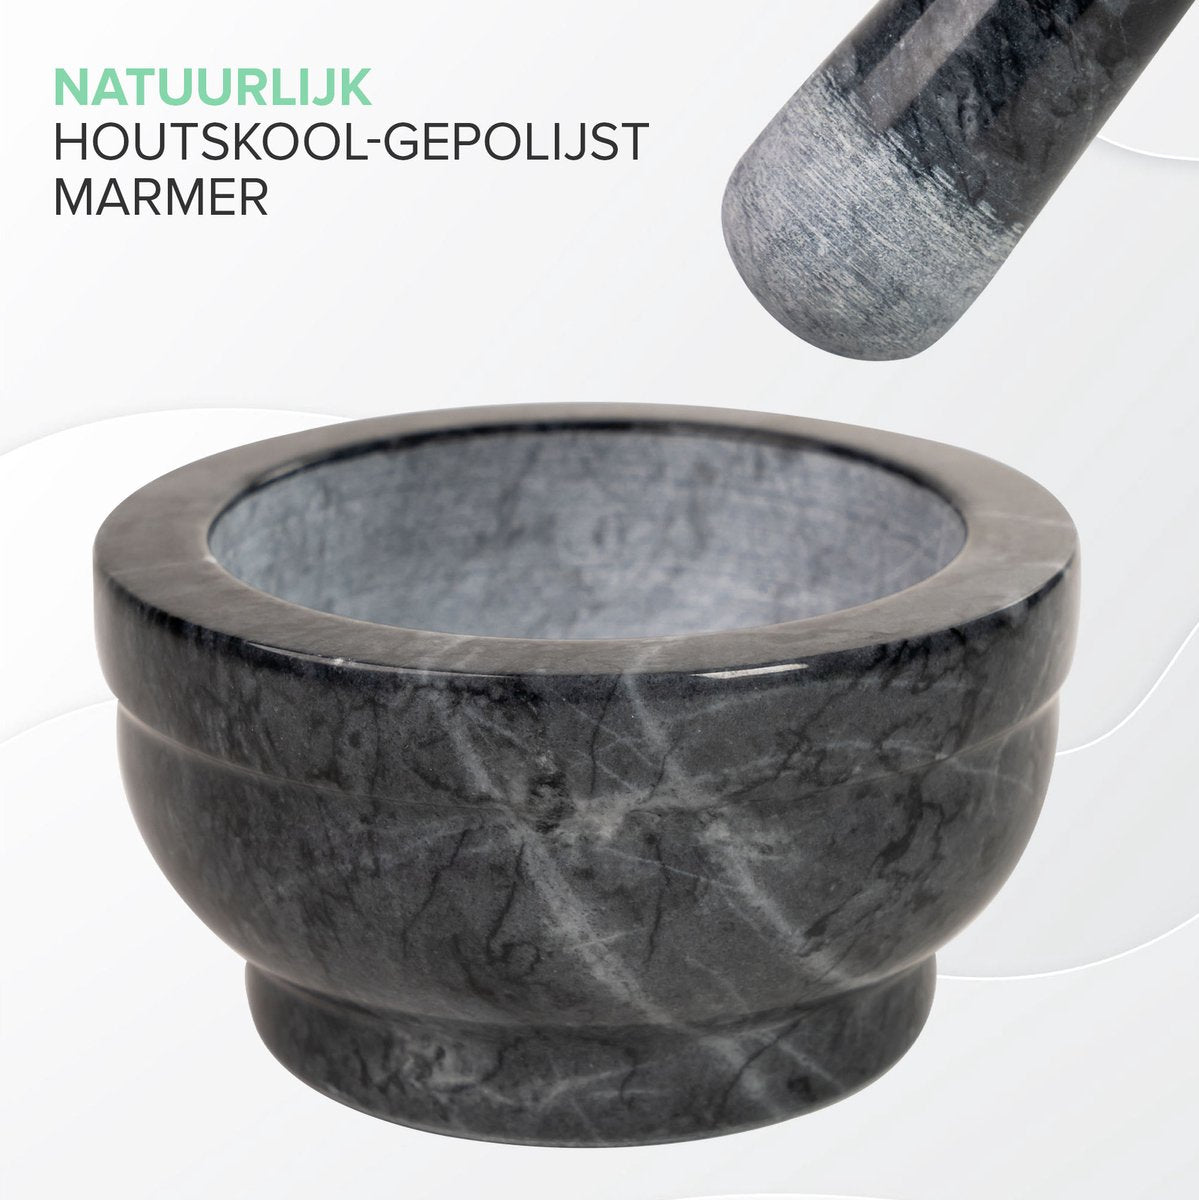 Coninx Vijzel - Mortier with Stamper - Herbstamper - Ø15 x H8cm - Black Marble polished